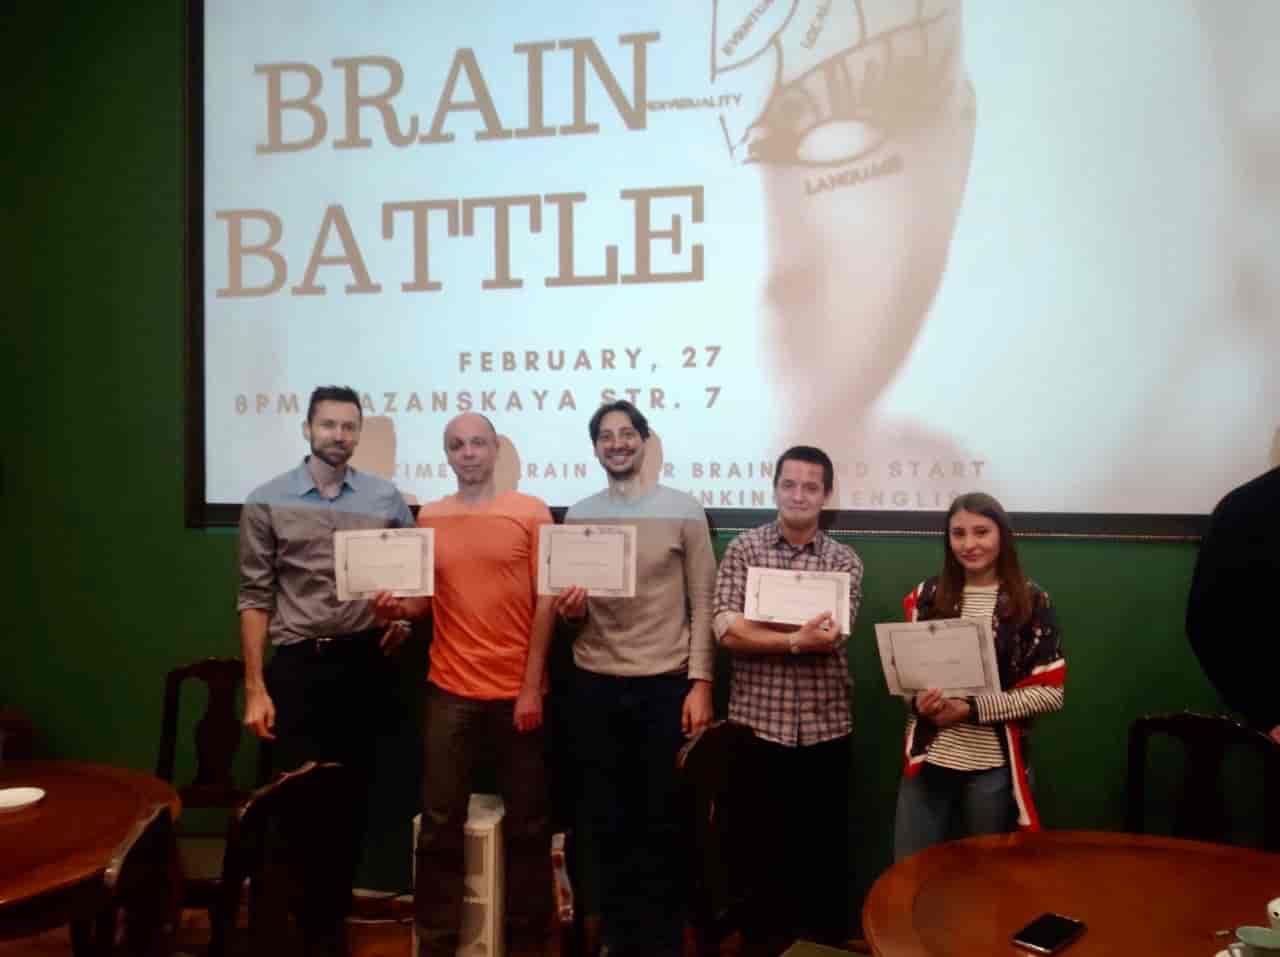 Brain Battle quiz